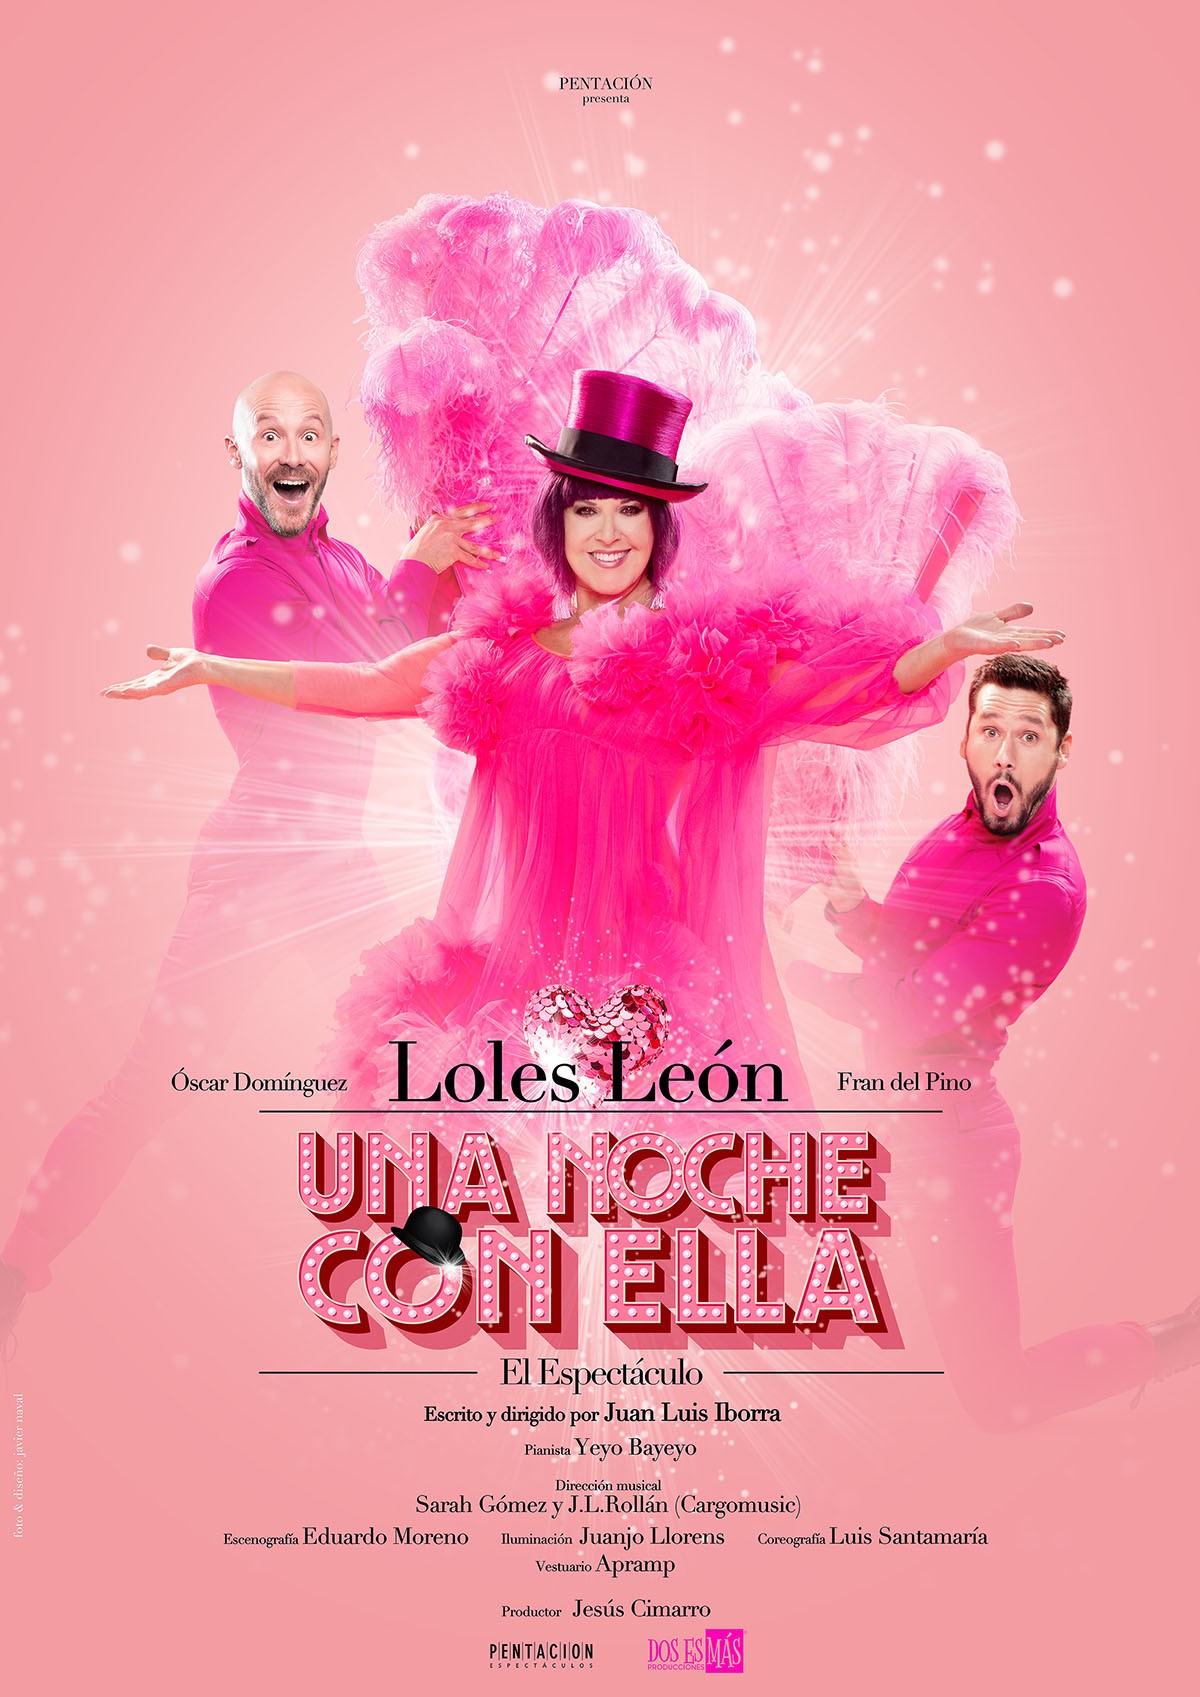 Loles León llega Valencia con el espectáculo “Una noche con ella”, un One Woman Show a su medida